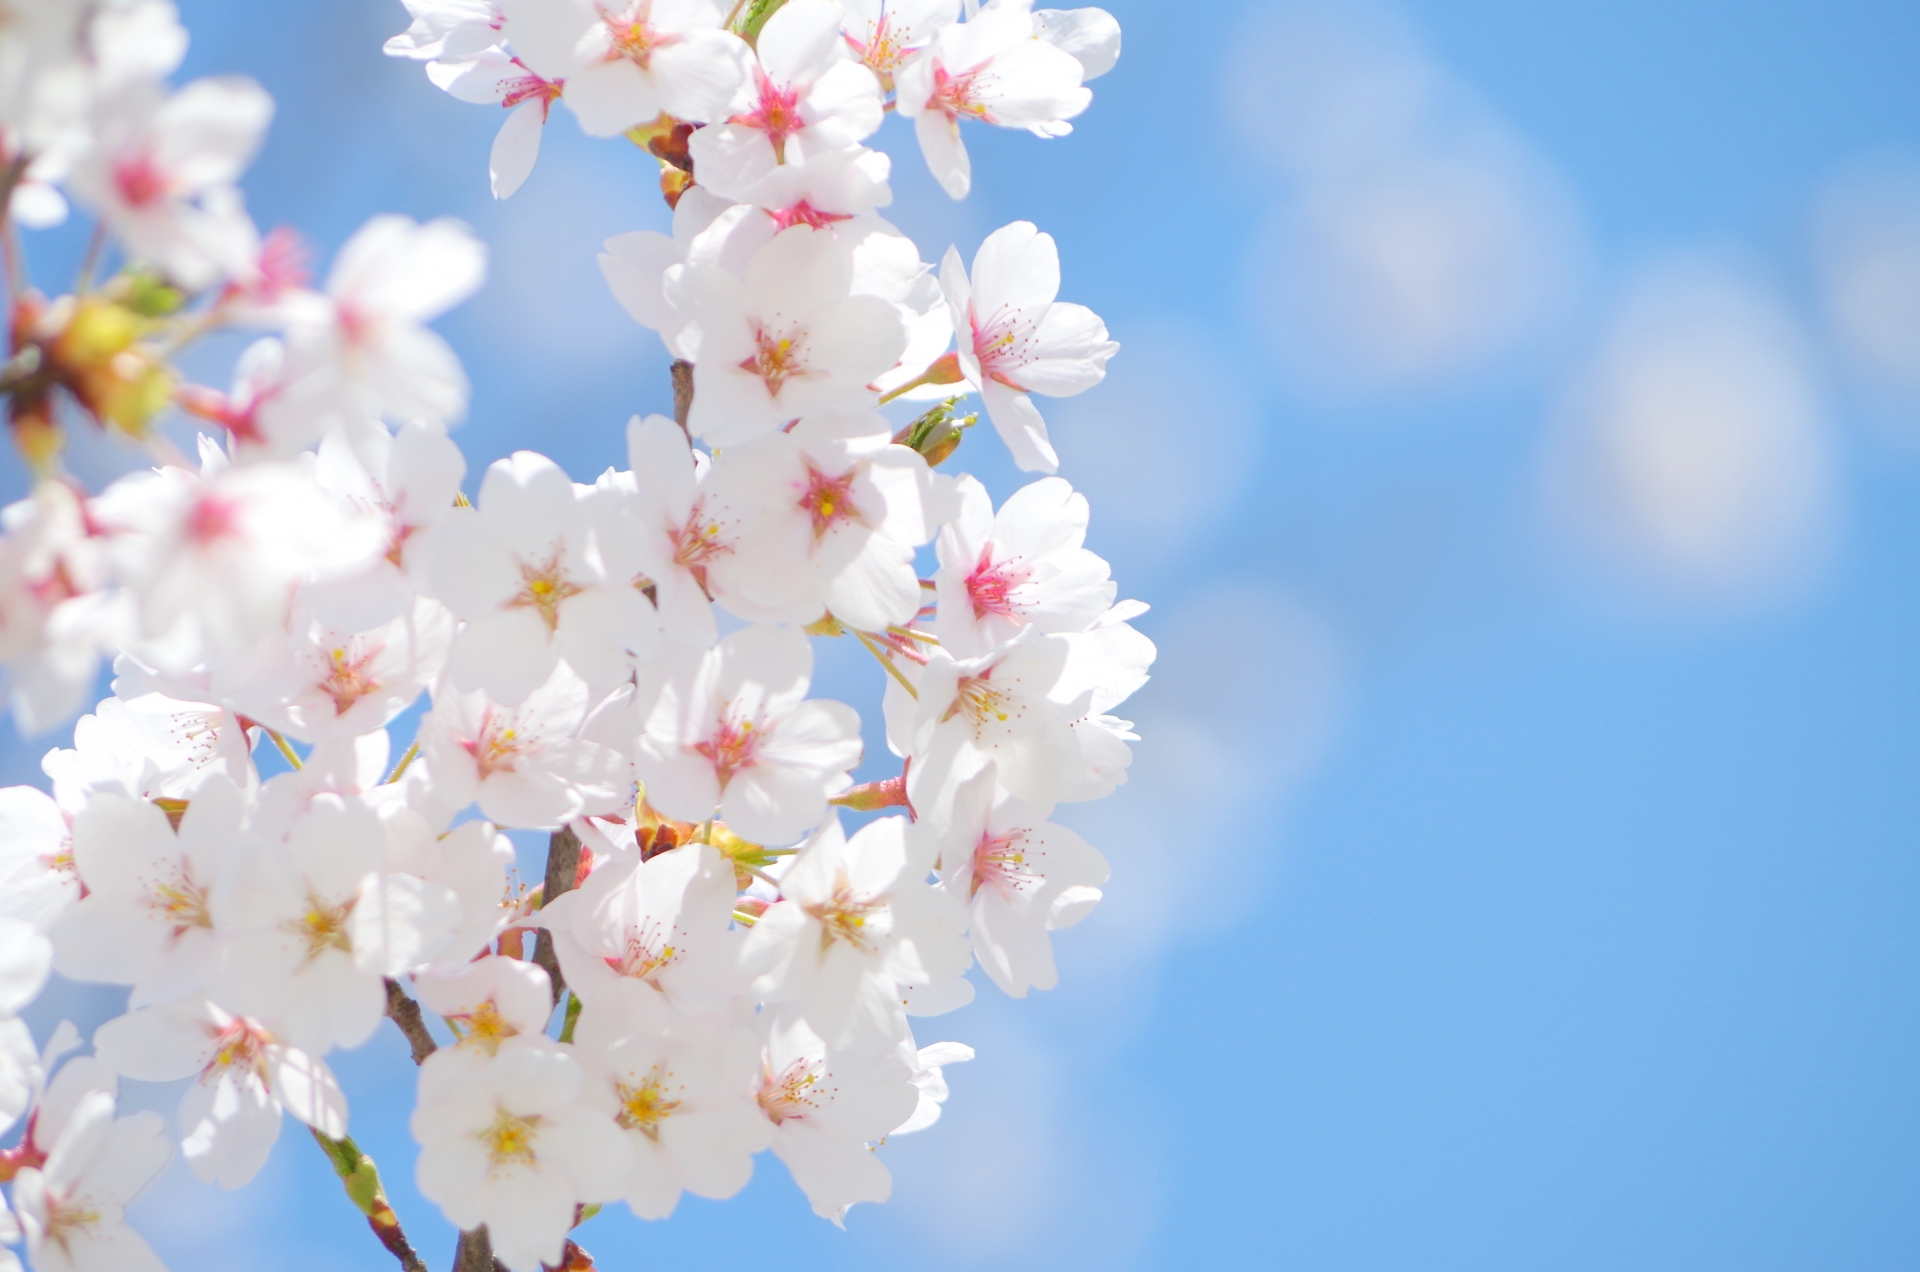 飯山白山森林公園の桜21 開花状況や桜まつりなど紹介 情報発信ブログサイト Blue Rose